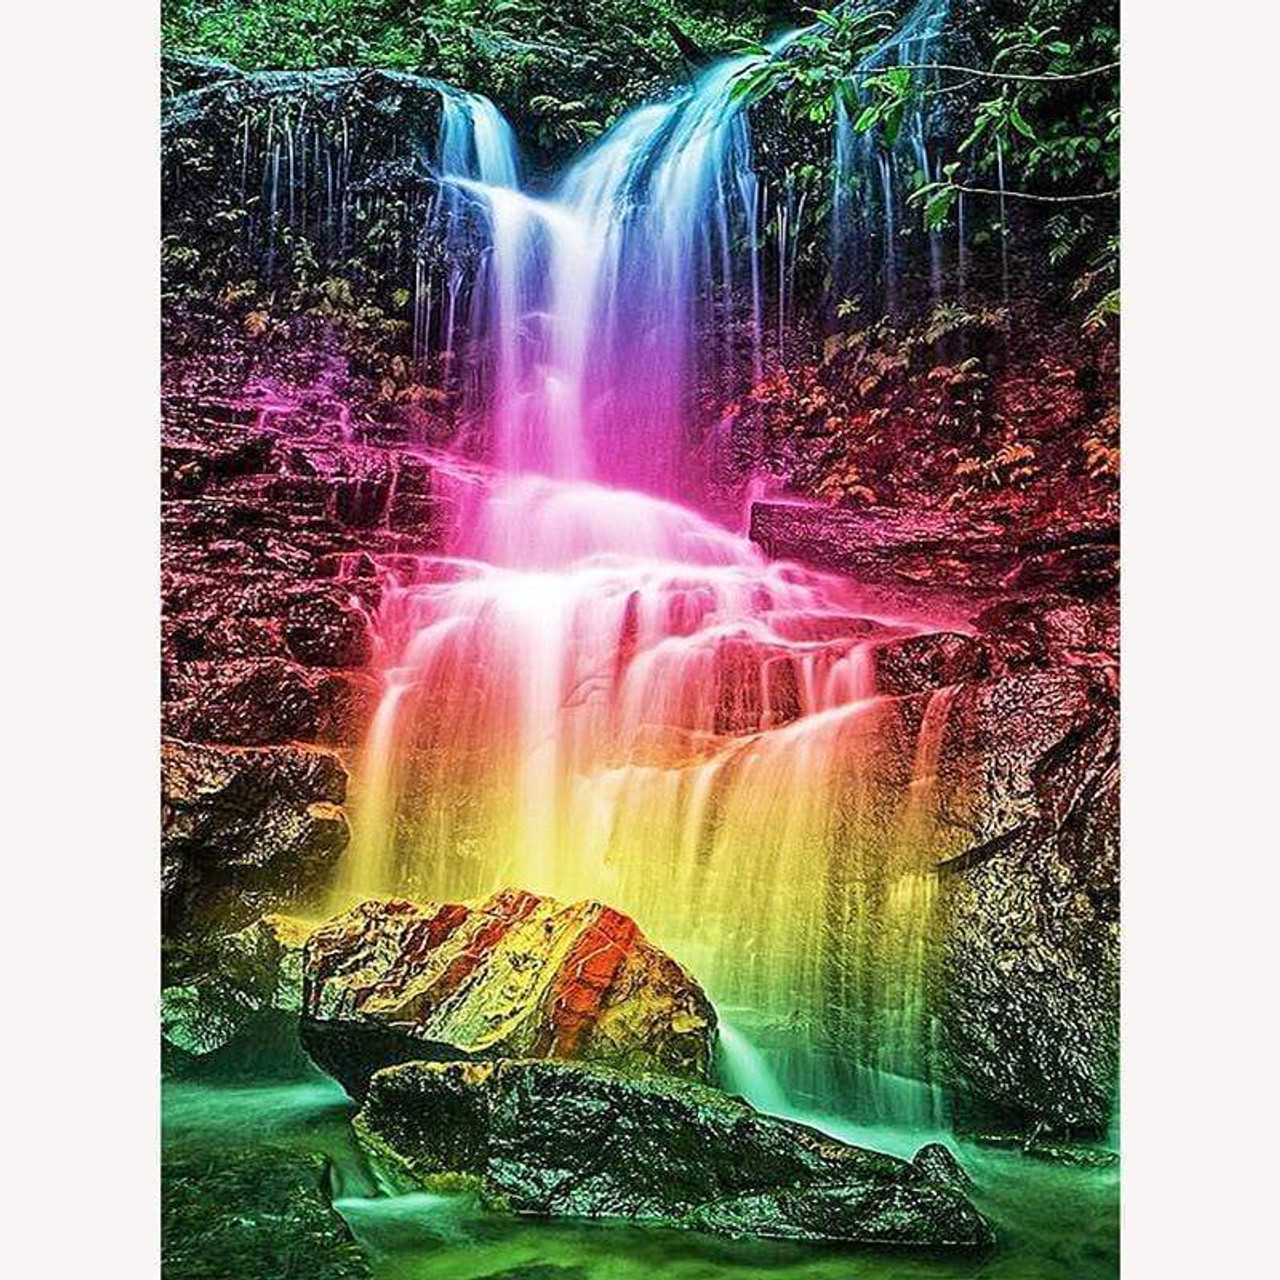 rainbows and waterfalls wallpaper